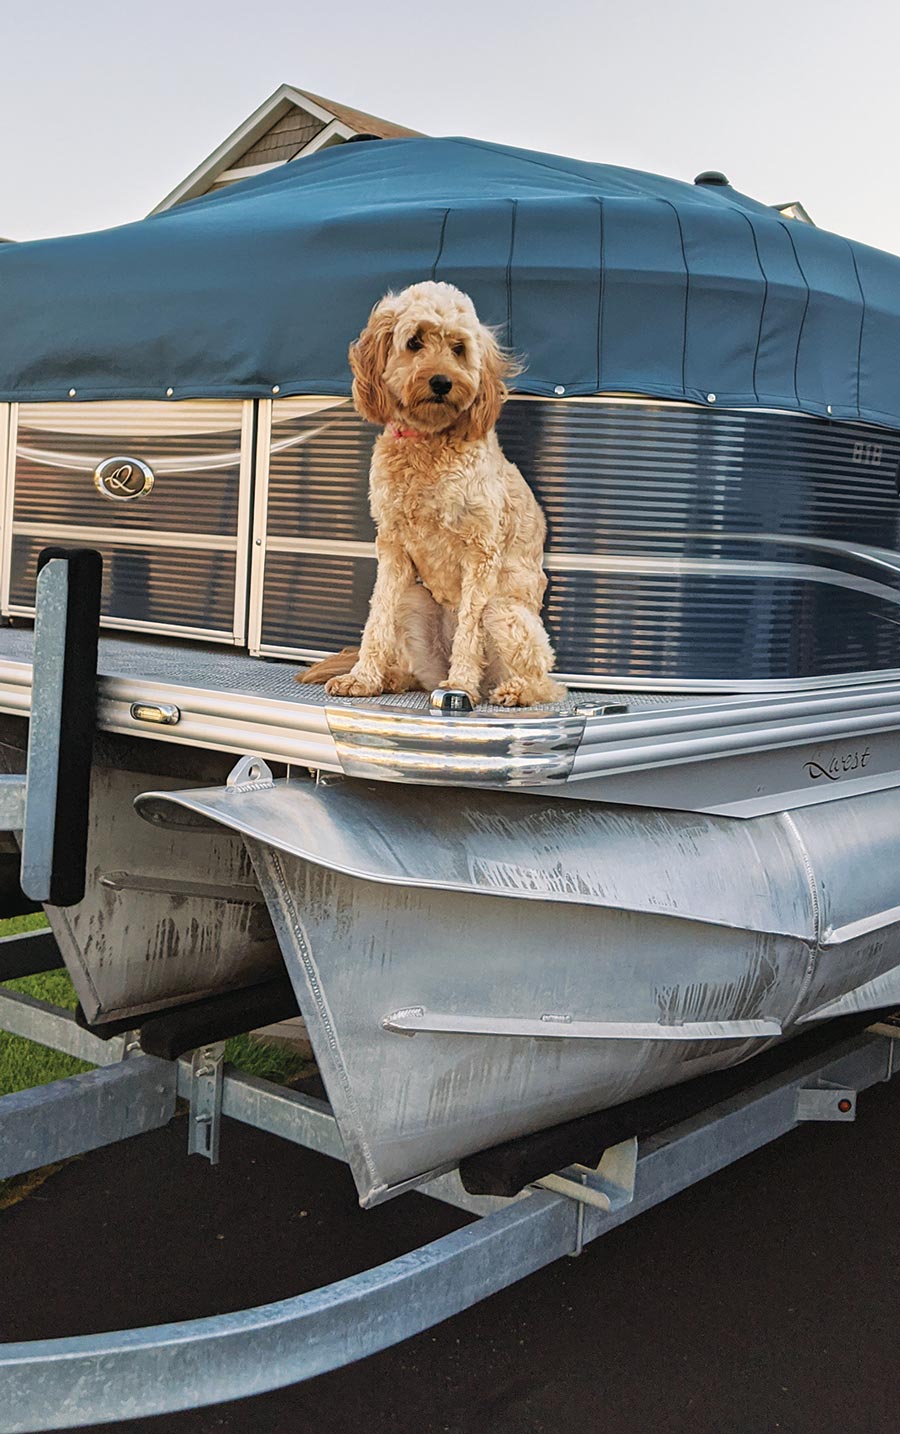 dog sitting on a boat